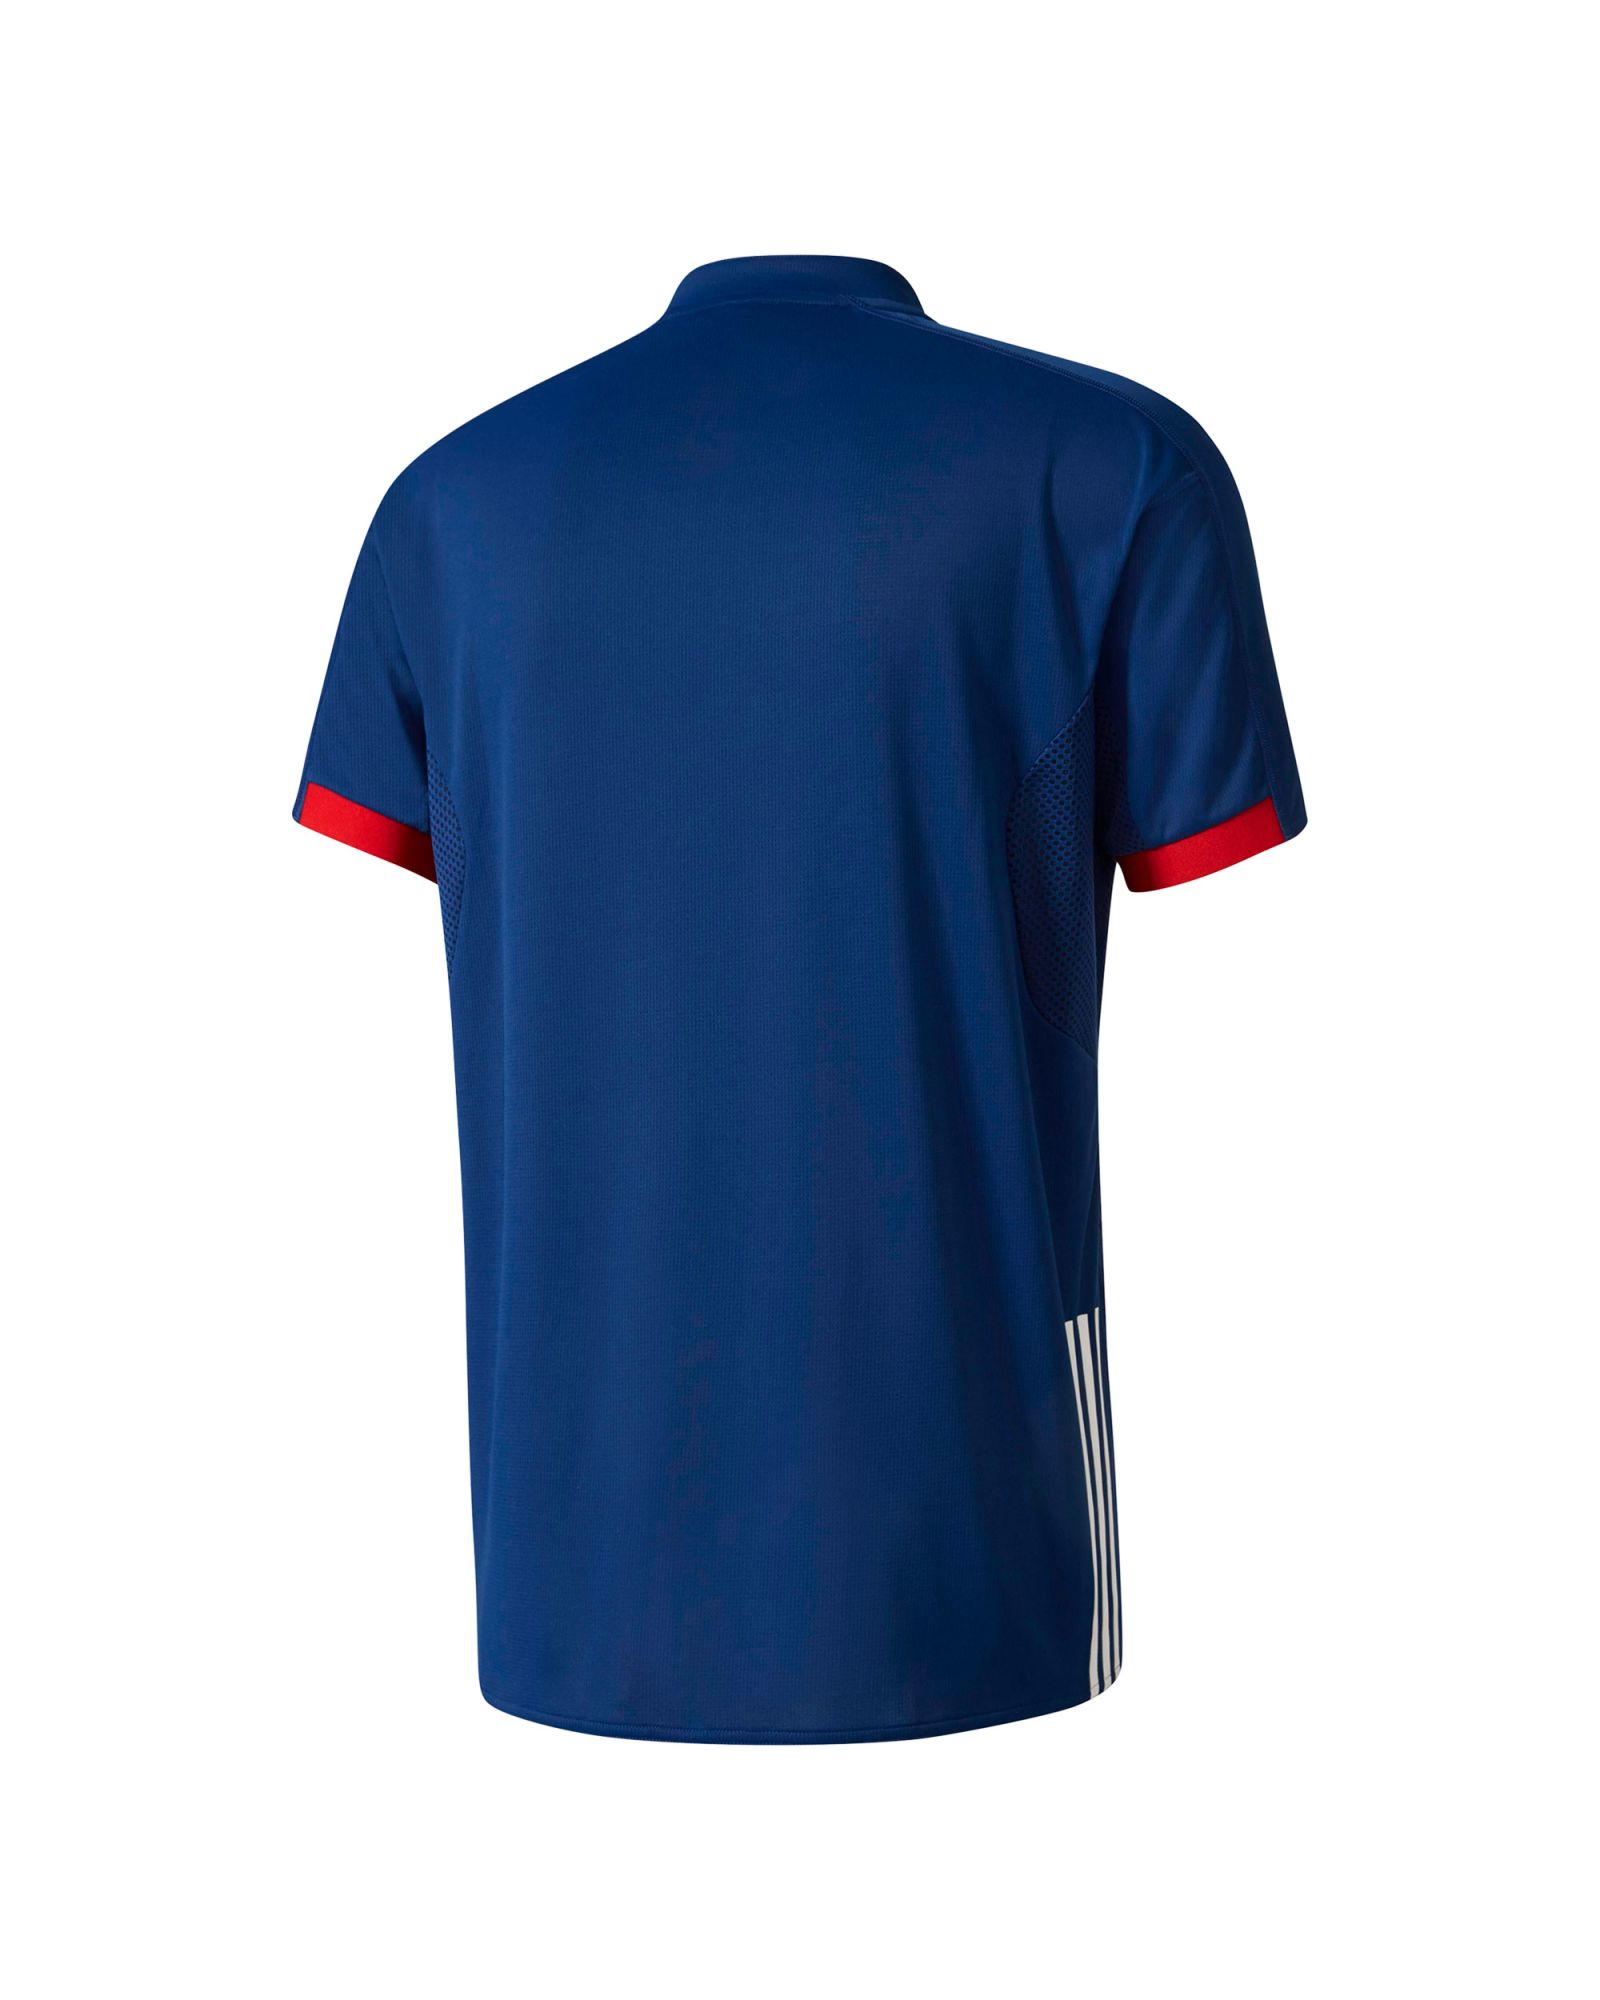 Camiseta 1ª Francia Balonmano Azul - Fútbol Factory